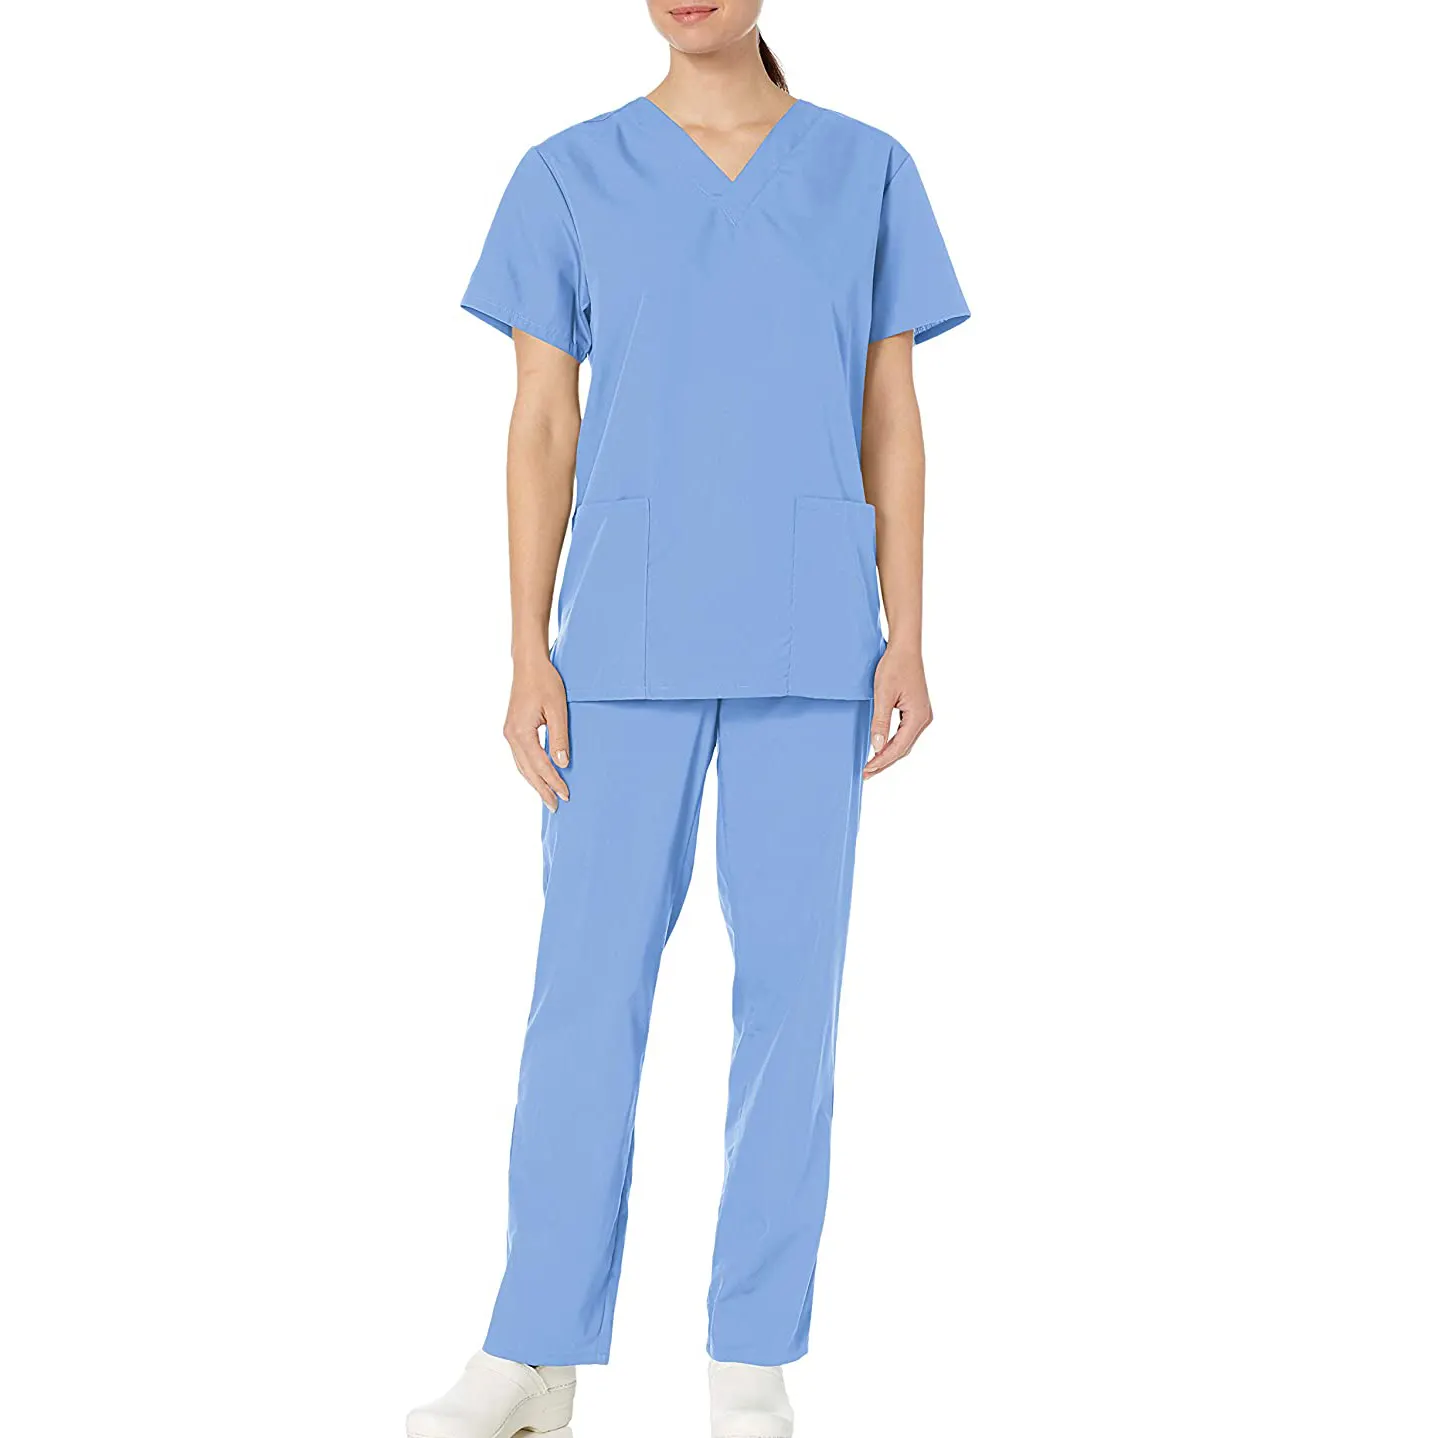 Uniforme de enfermería para mujer, conjunto de traje de Hospital para correr, médicos y enfermeras, nuevo estilo